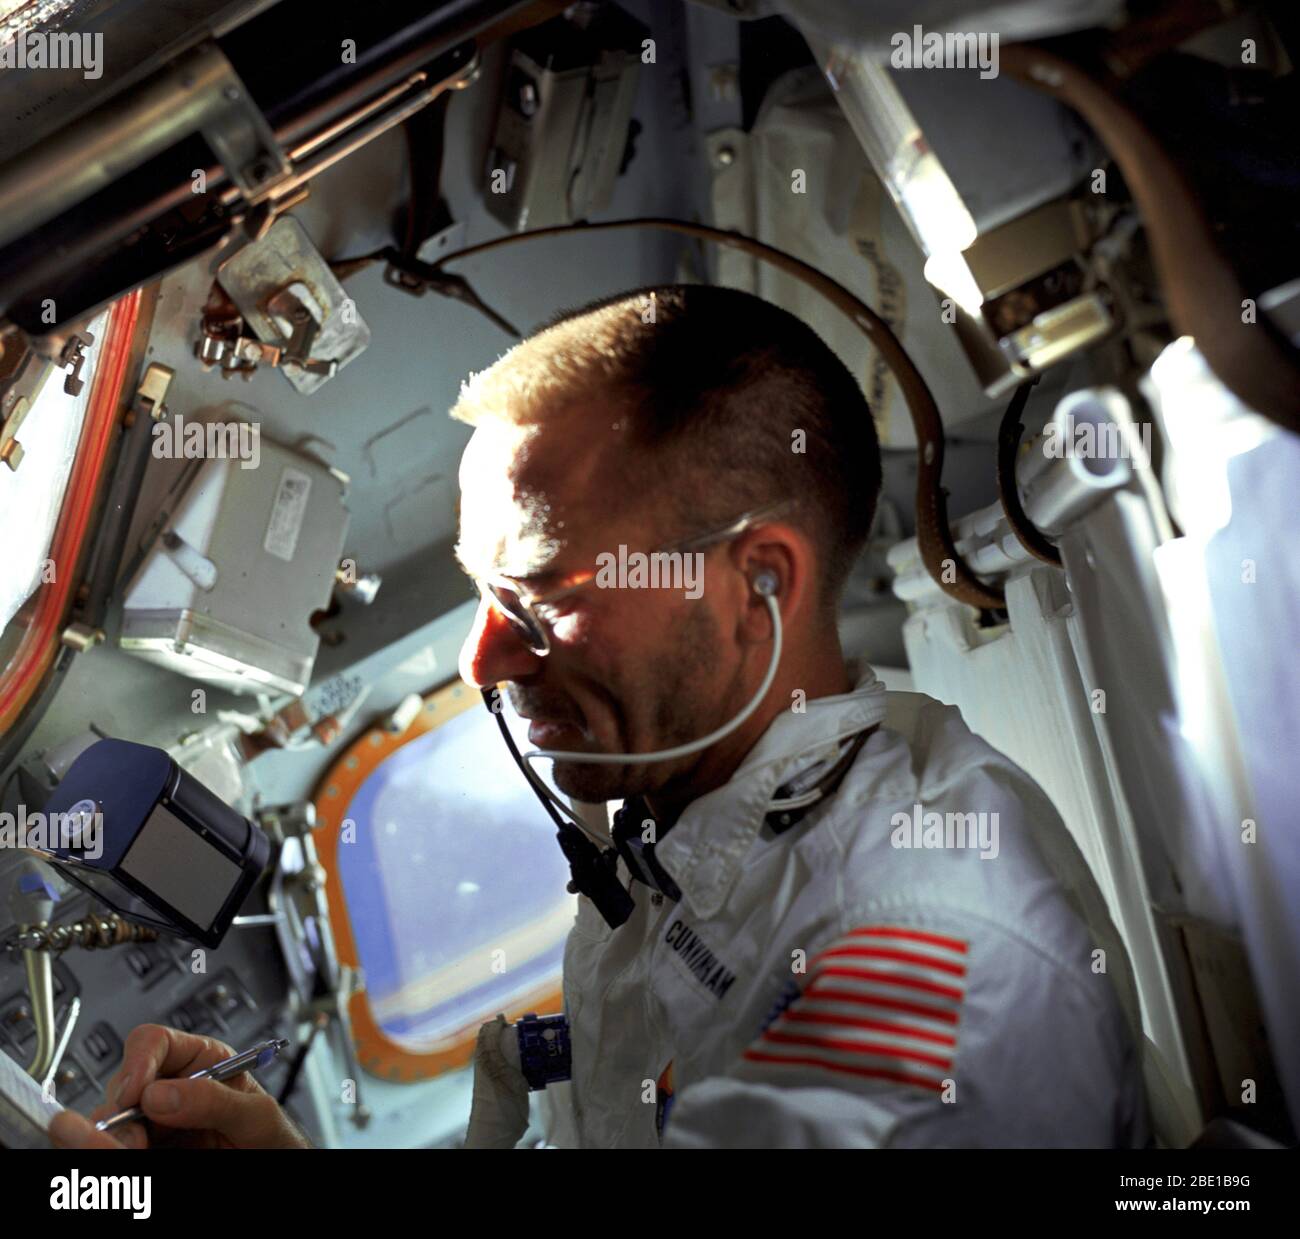 (20 Oktober 1968) - - - Astronaut Walter Cunningham, Apollo 7 Lunar Module Pilot, schreibt mit Space pen, wie er fotografiert ist der Flug Aufgaben Am neunten Tag der Apollo 7-Mission. Beachten Sie die 70 mm Hasselblad Kamera film Magazin direkt über Cunninghams Rechten schweben in der Schwerelosigkeit (Schwerelosigkeit) Umgebung der Sonde. Stockfoto